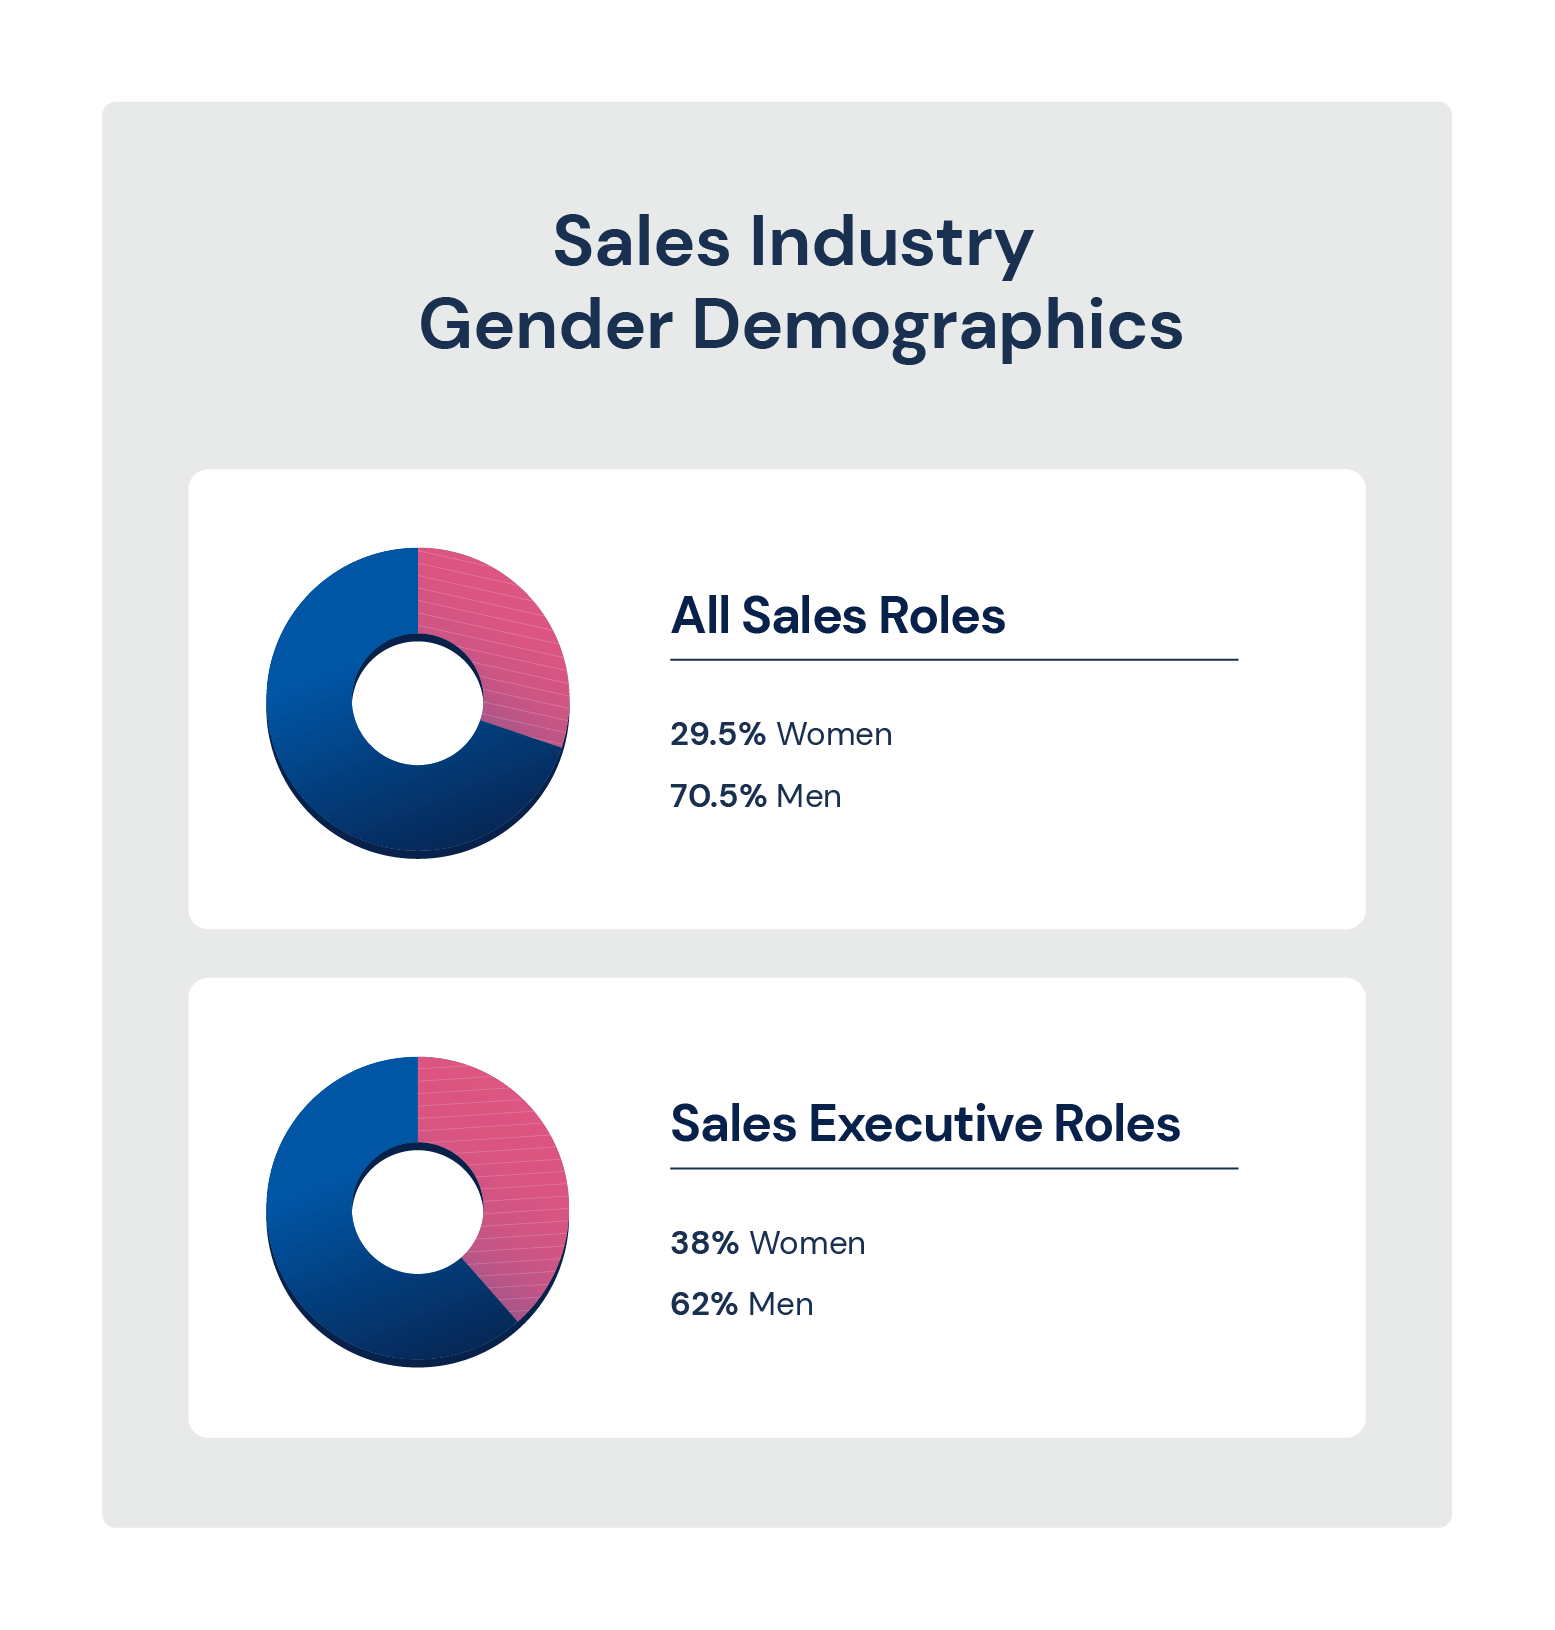 Sales industry gender demographics pie charts